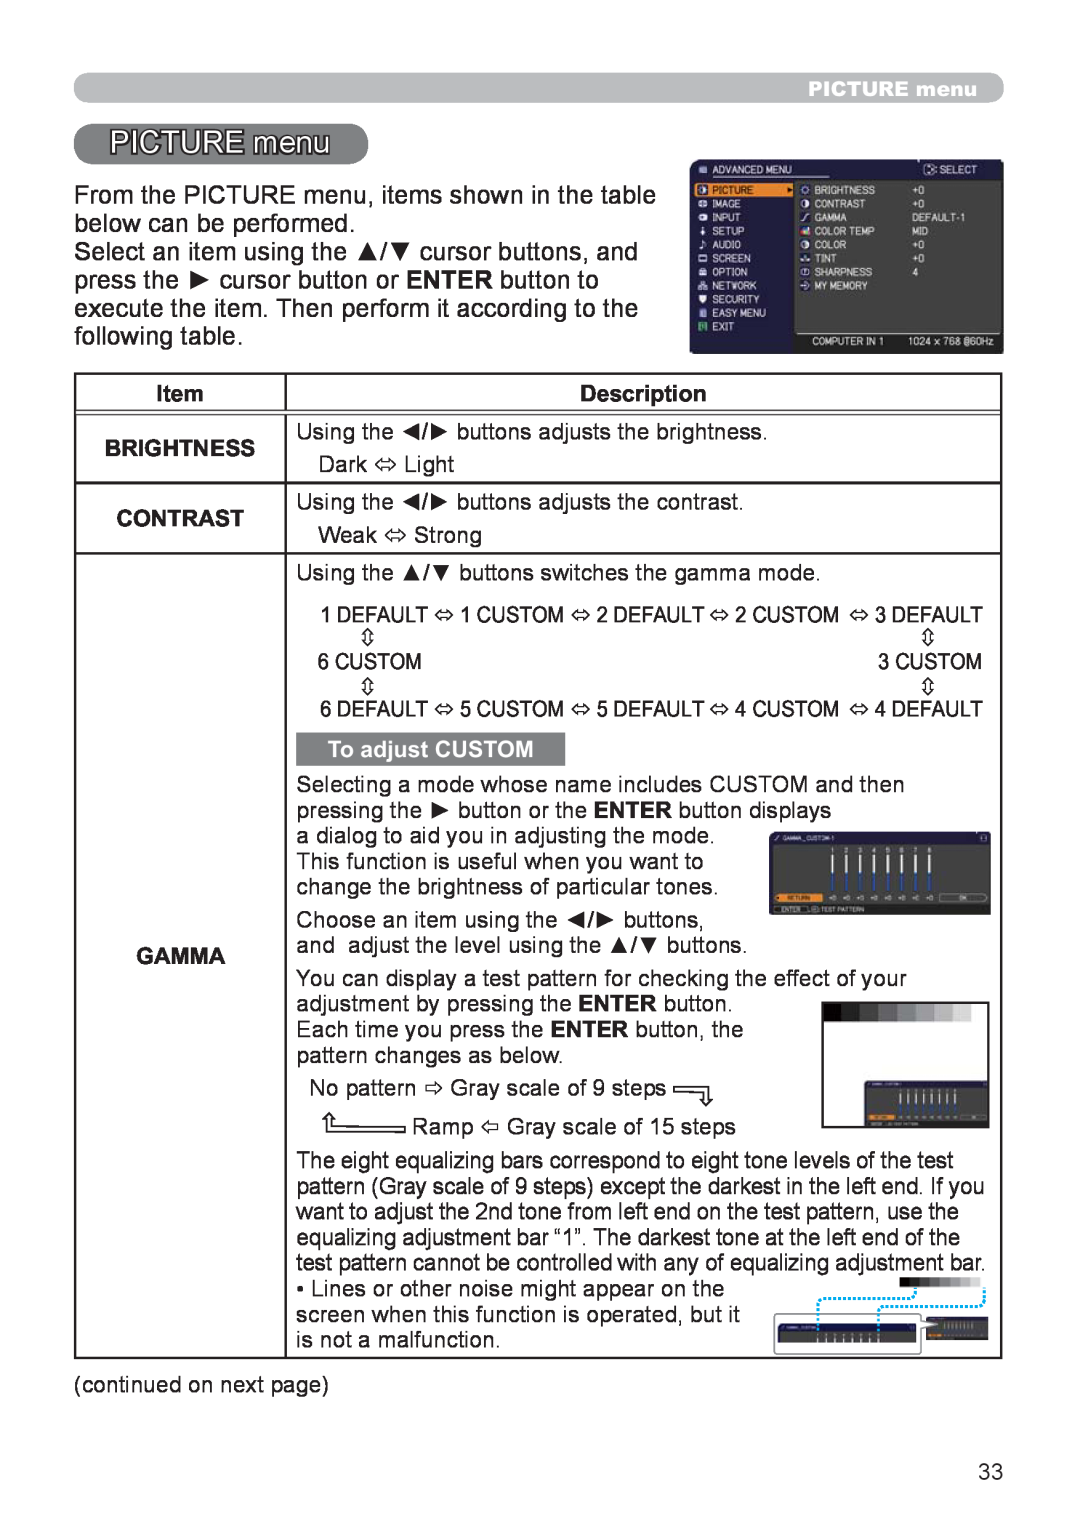 Hitachi CP-X3021WN, CP-X2521WN user manual PICTURE menu, Item, Description, Brightness, Contrast, Gamma 